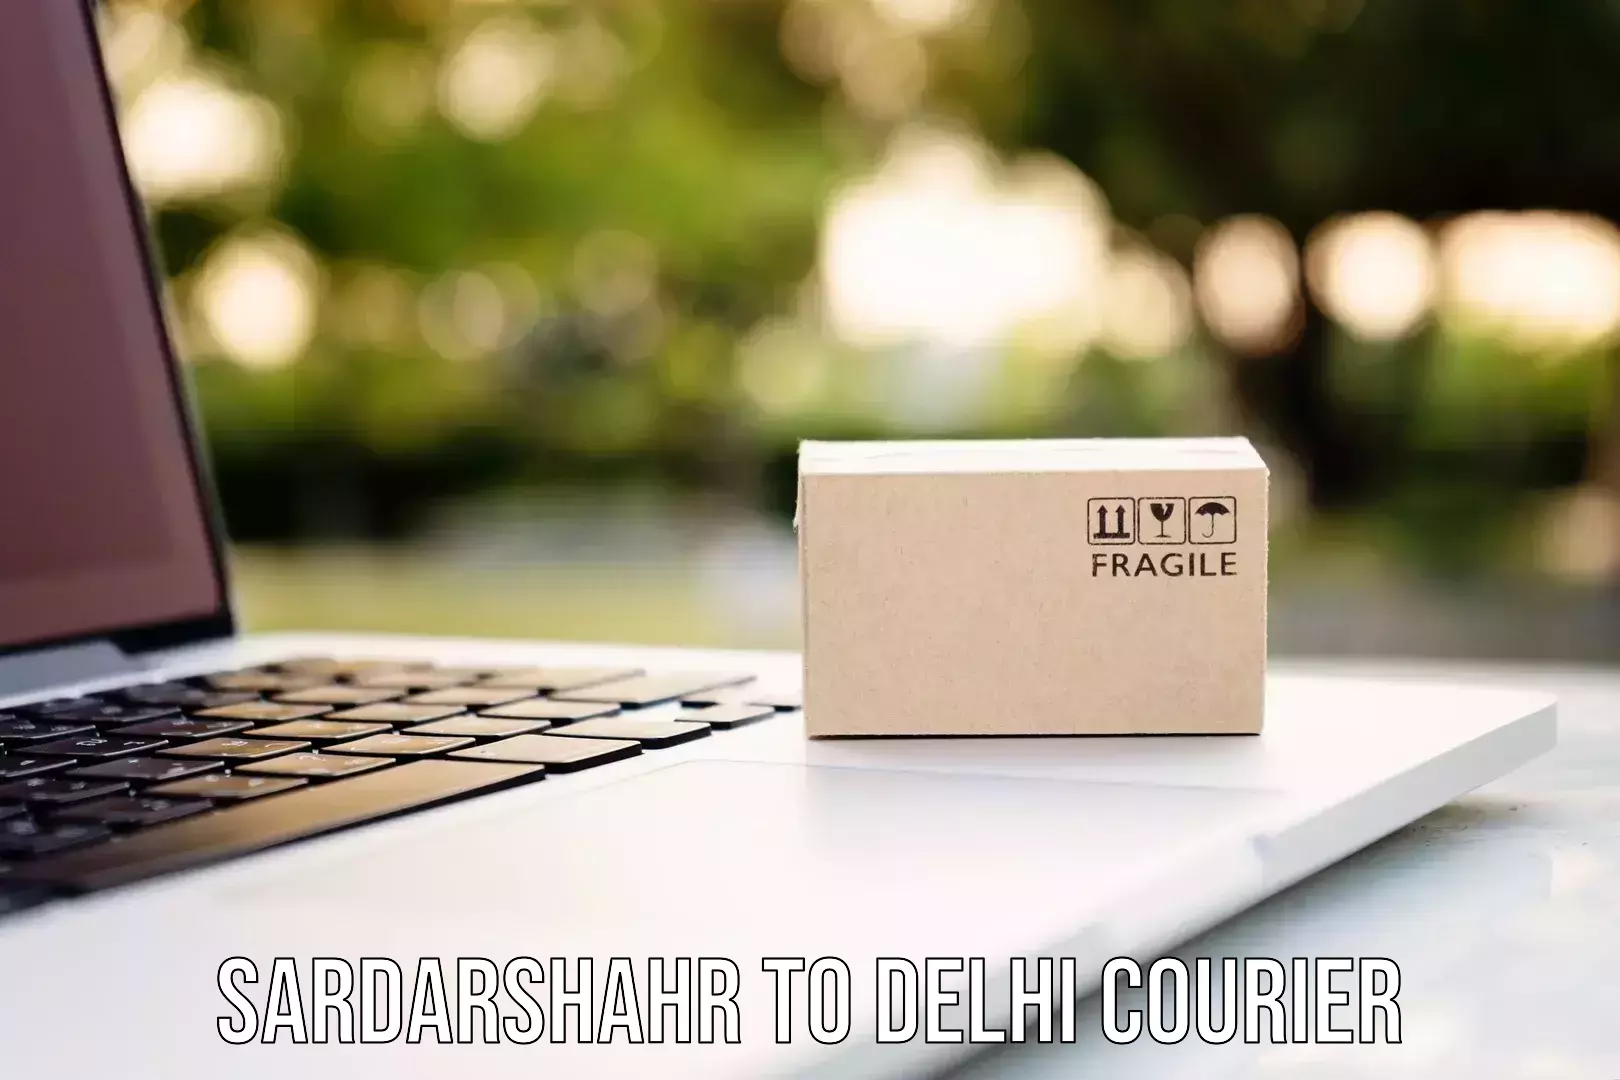 Urban courier service Sardarshahr to University of Delhi